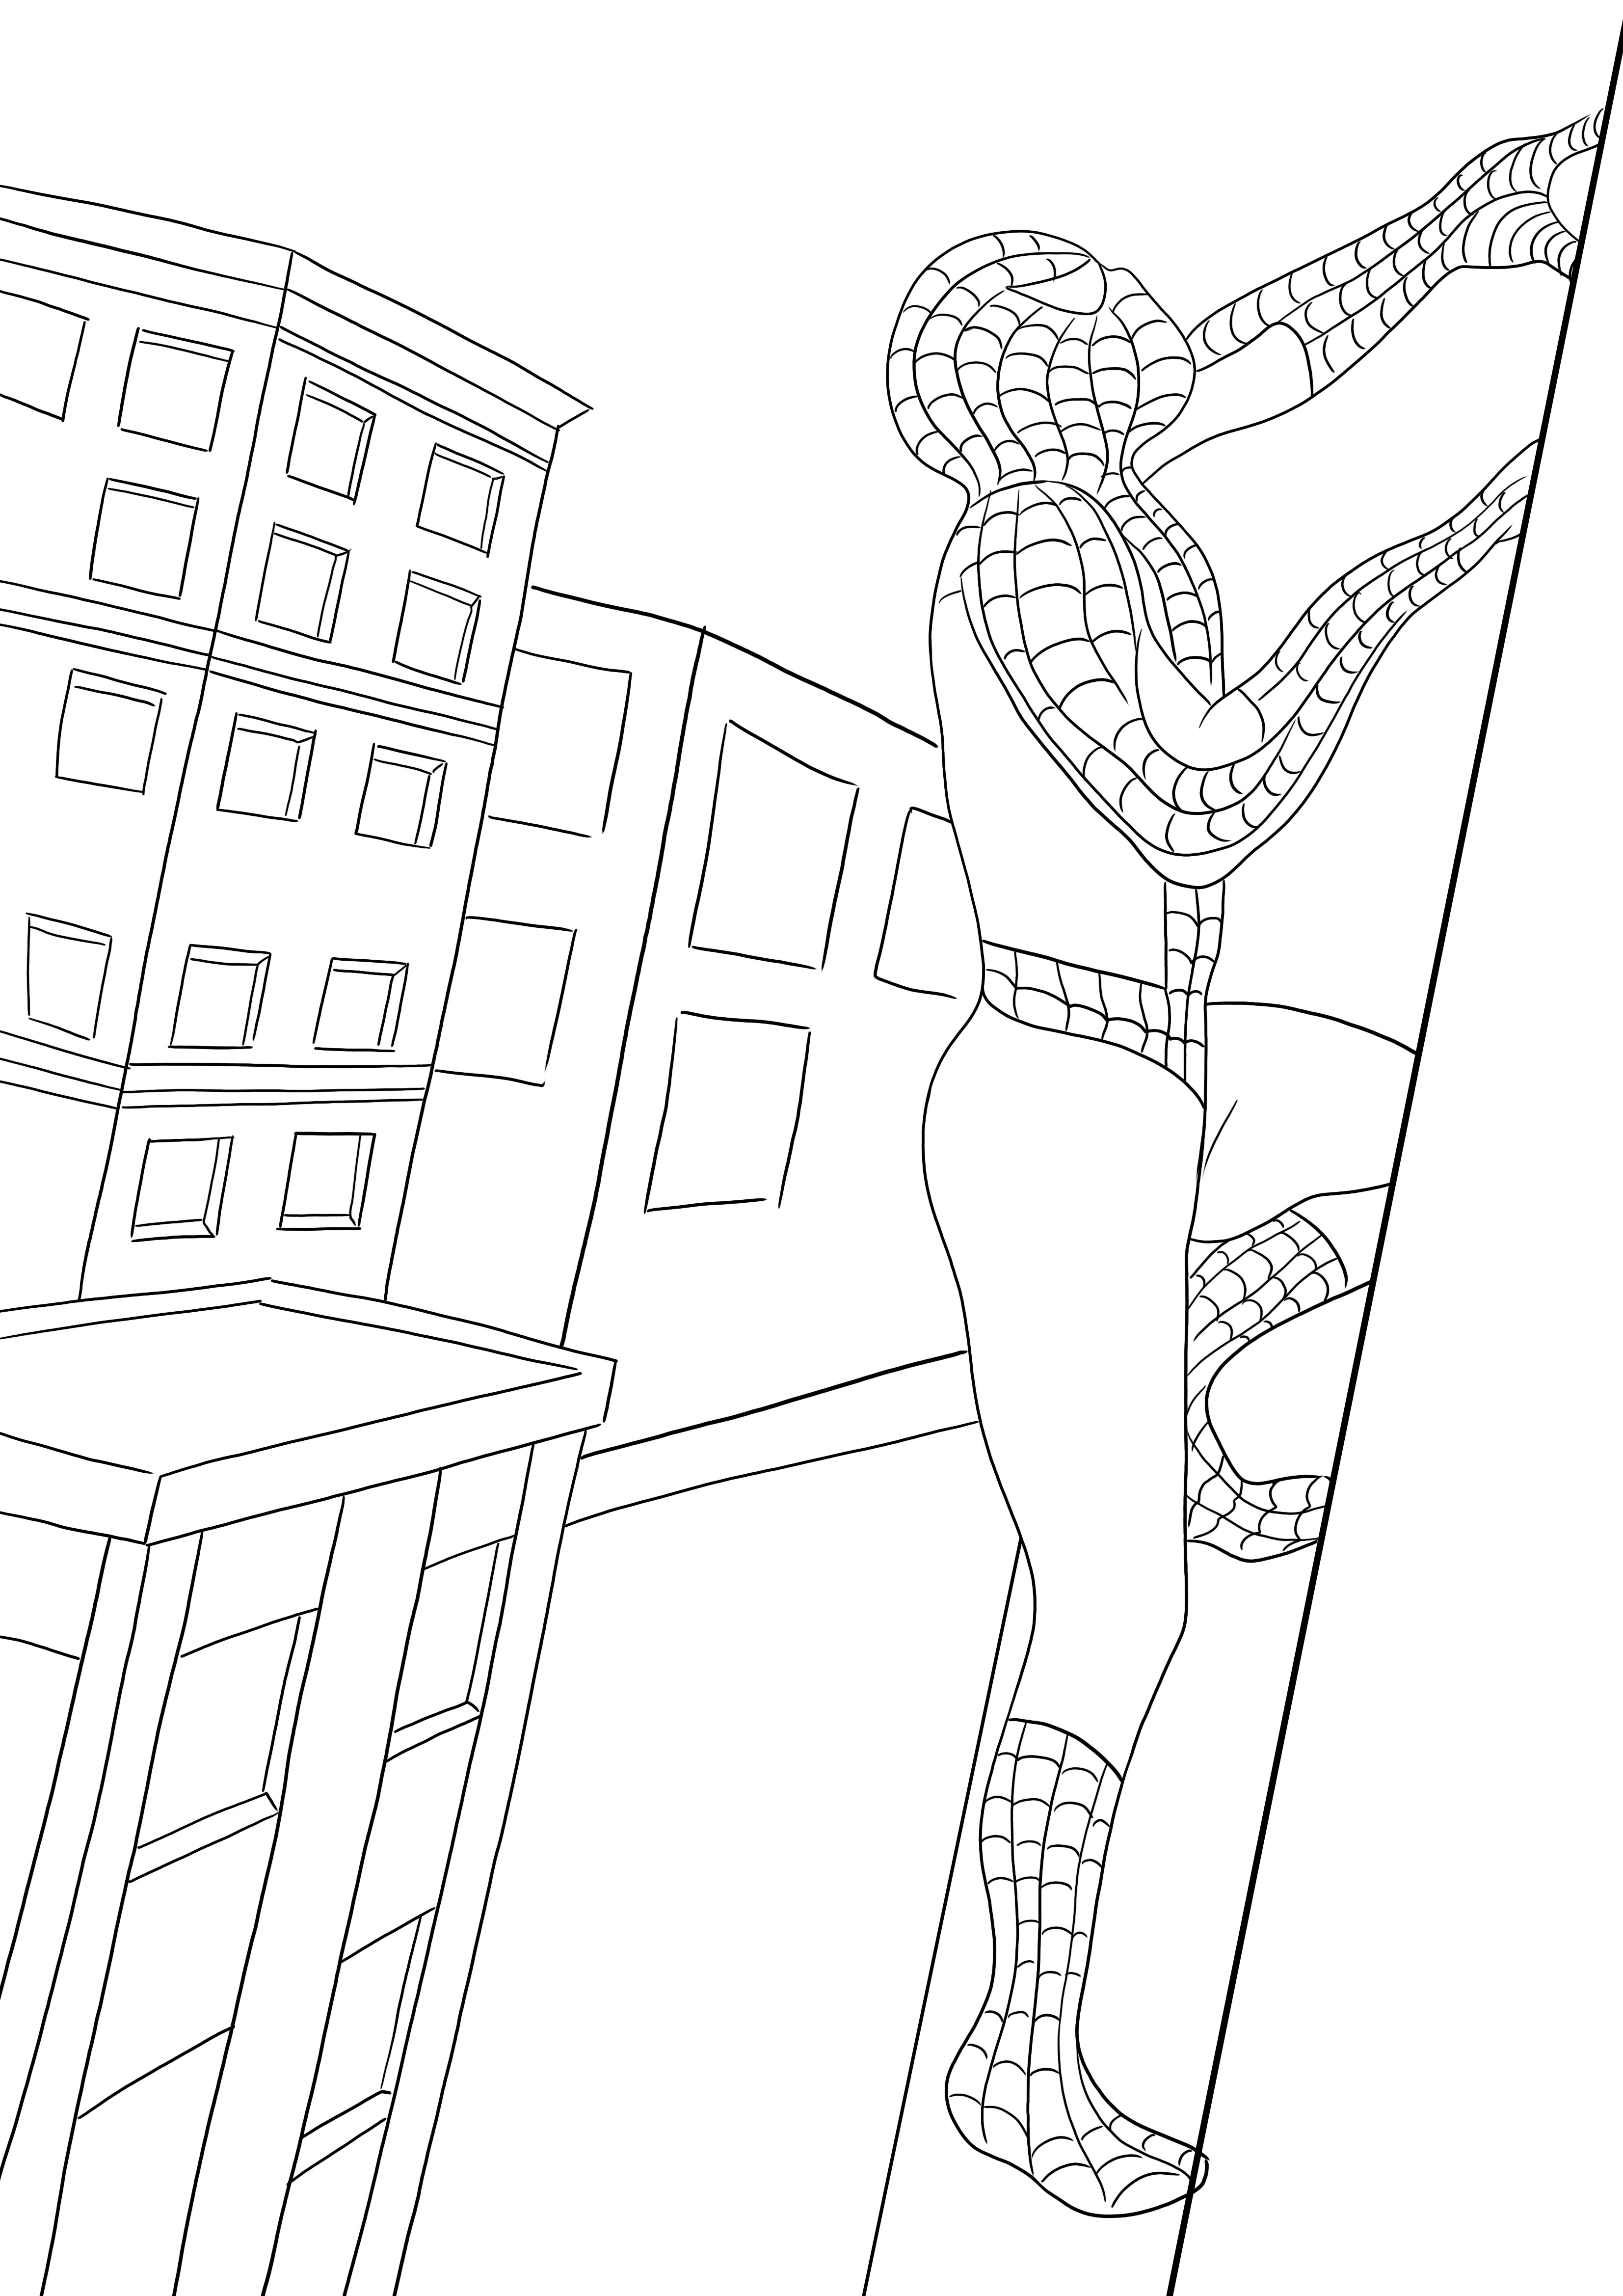 Un imprimable gratuit de Spiderman escaladant le bâtiment - les enfants peuvent facilement le colorier